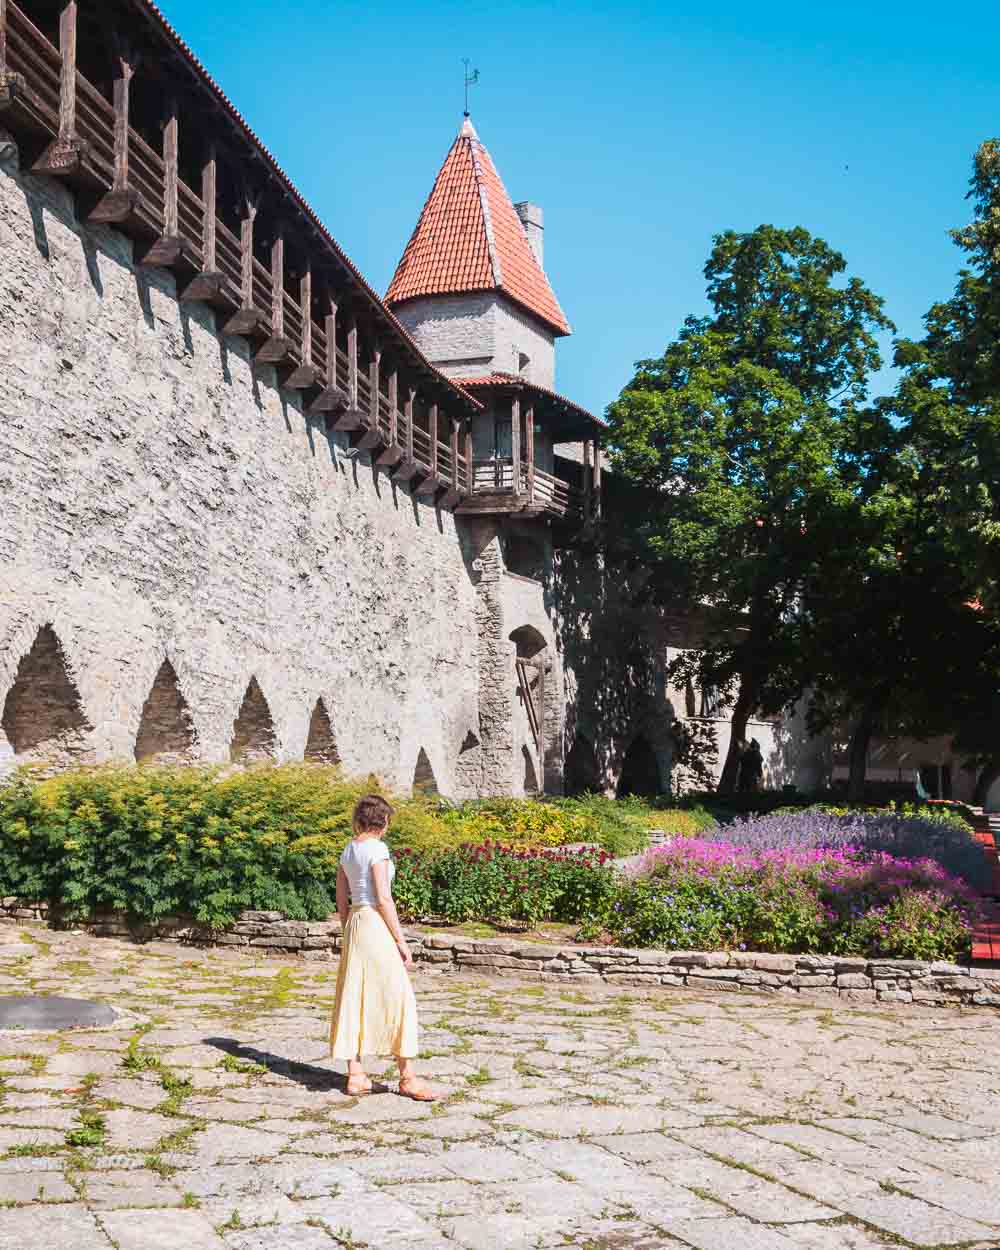 Stadtmauern von Tallinn in Estland